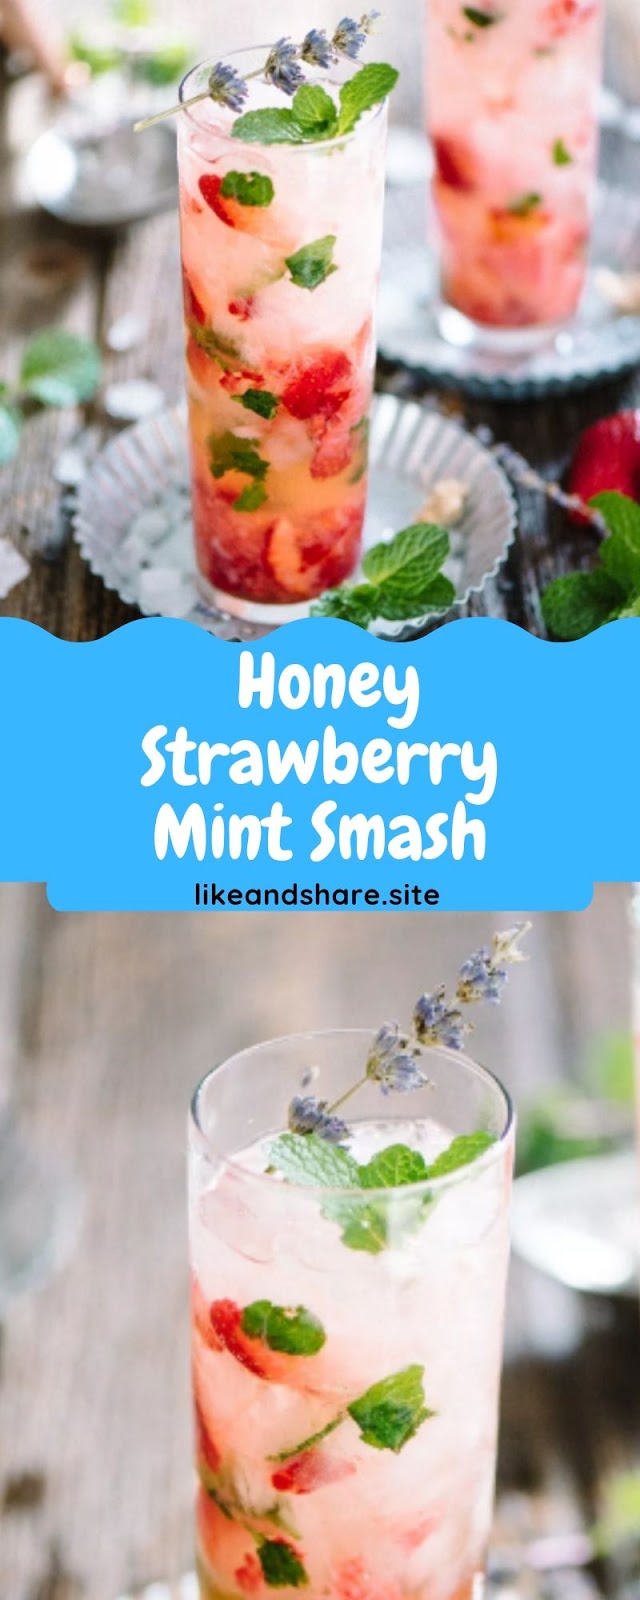  Honey Strawberry Mint Smash